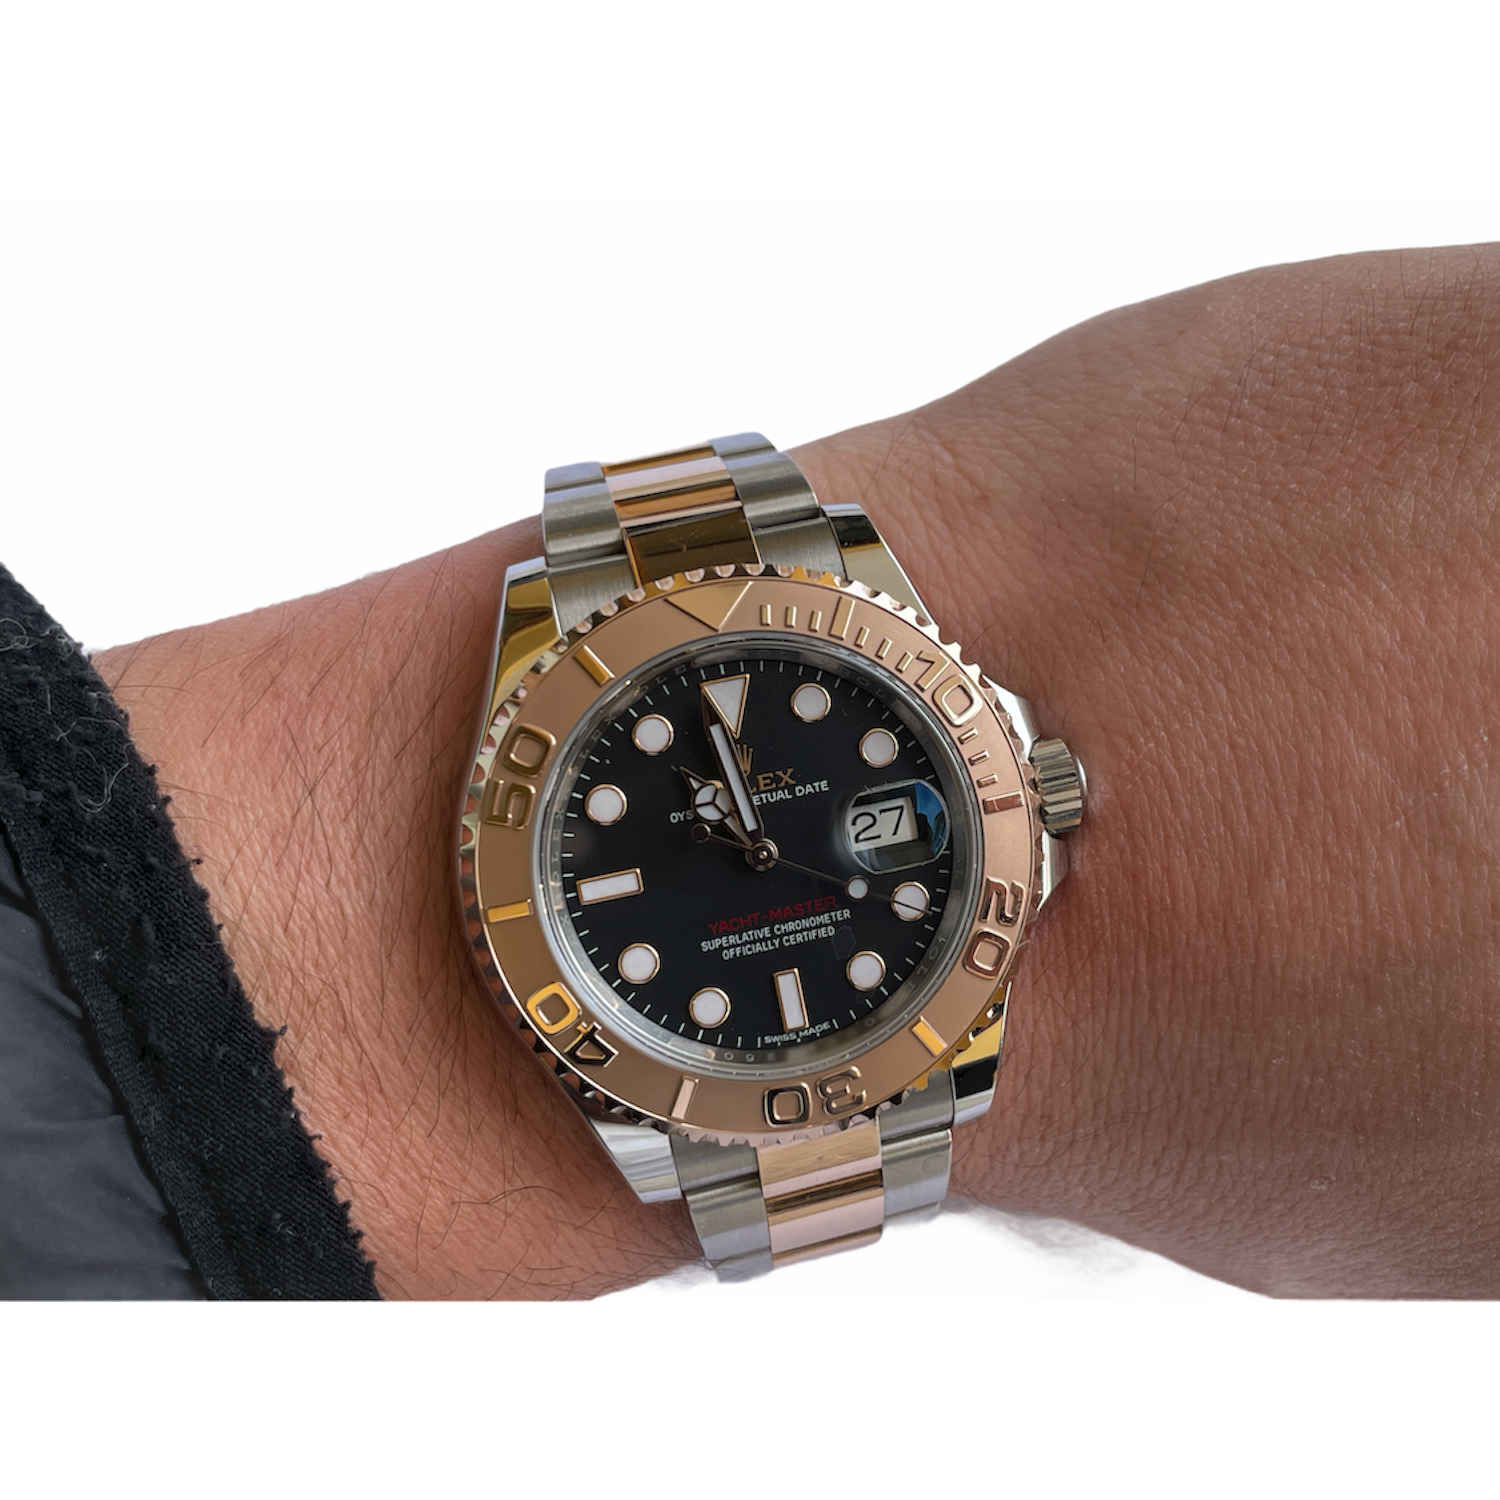 Rolex Yacht-Master 18K Rose Gold/Steel Watch